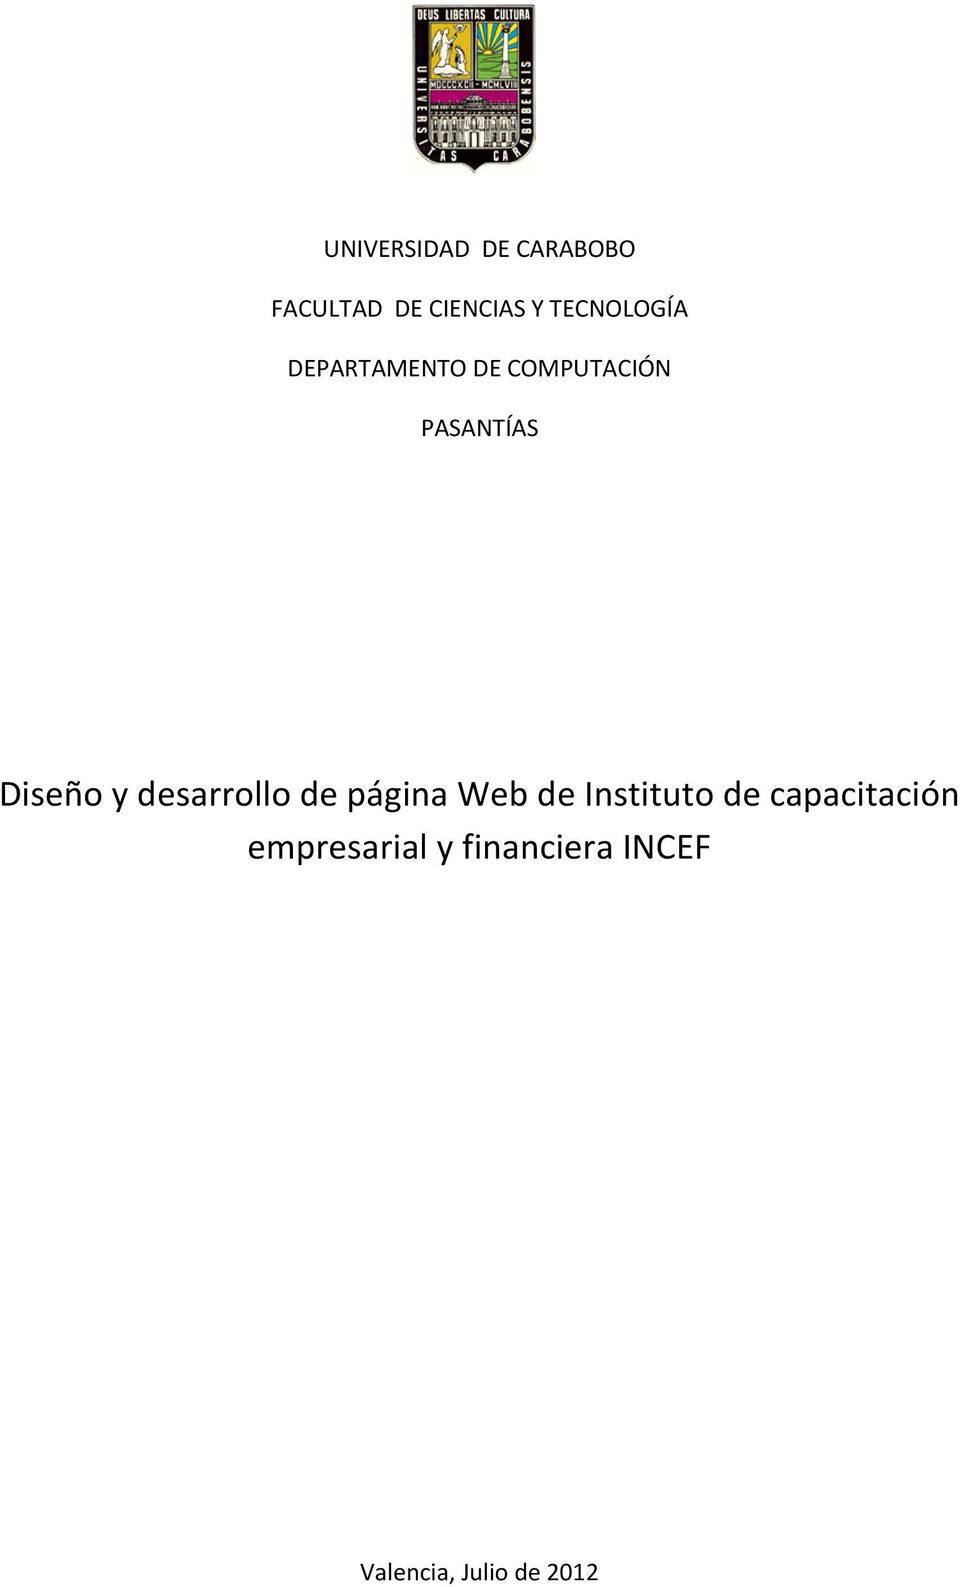 Diseño y desarrollo de página Web de Instituto de